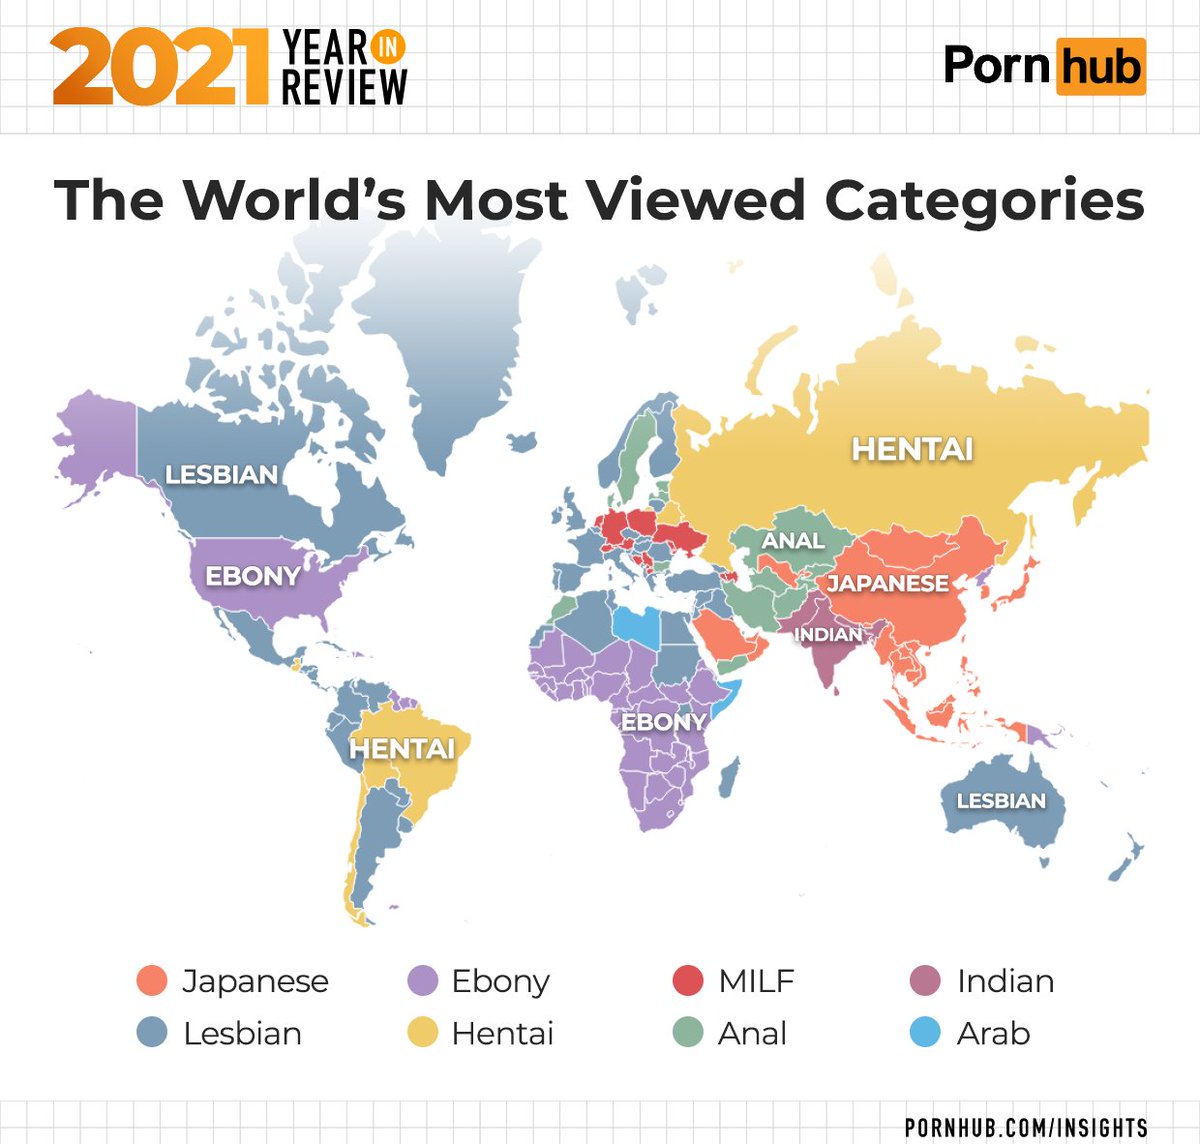 全球最大色情网站 Pornhub 的浏览类别分布，可以大致反映出各国人民的性爱癖好和倾向。 